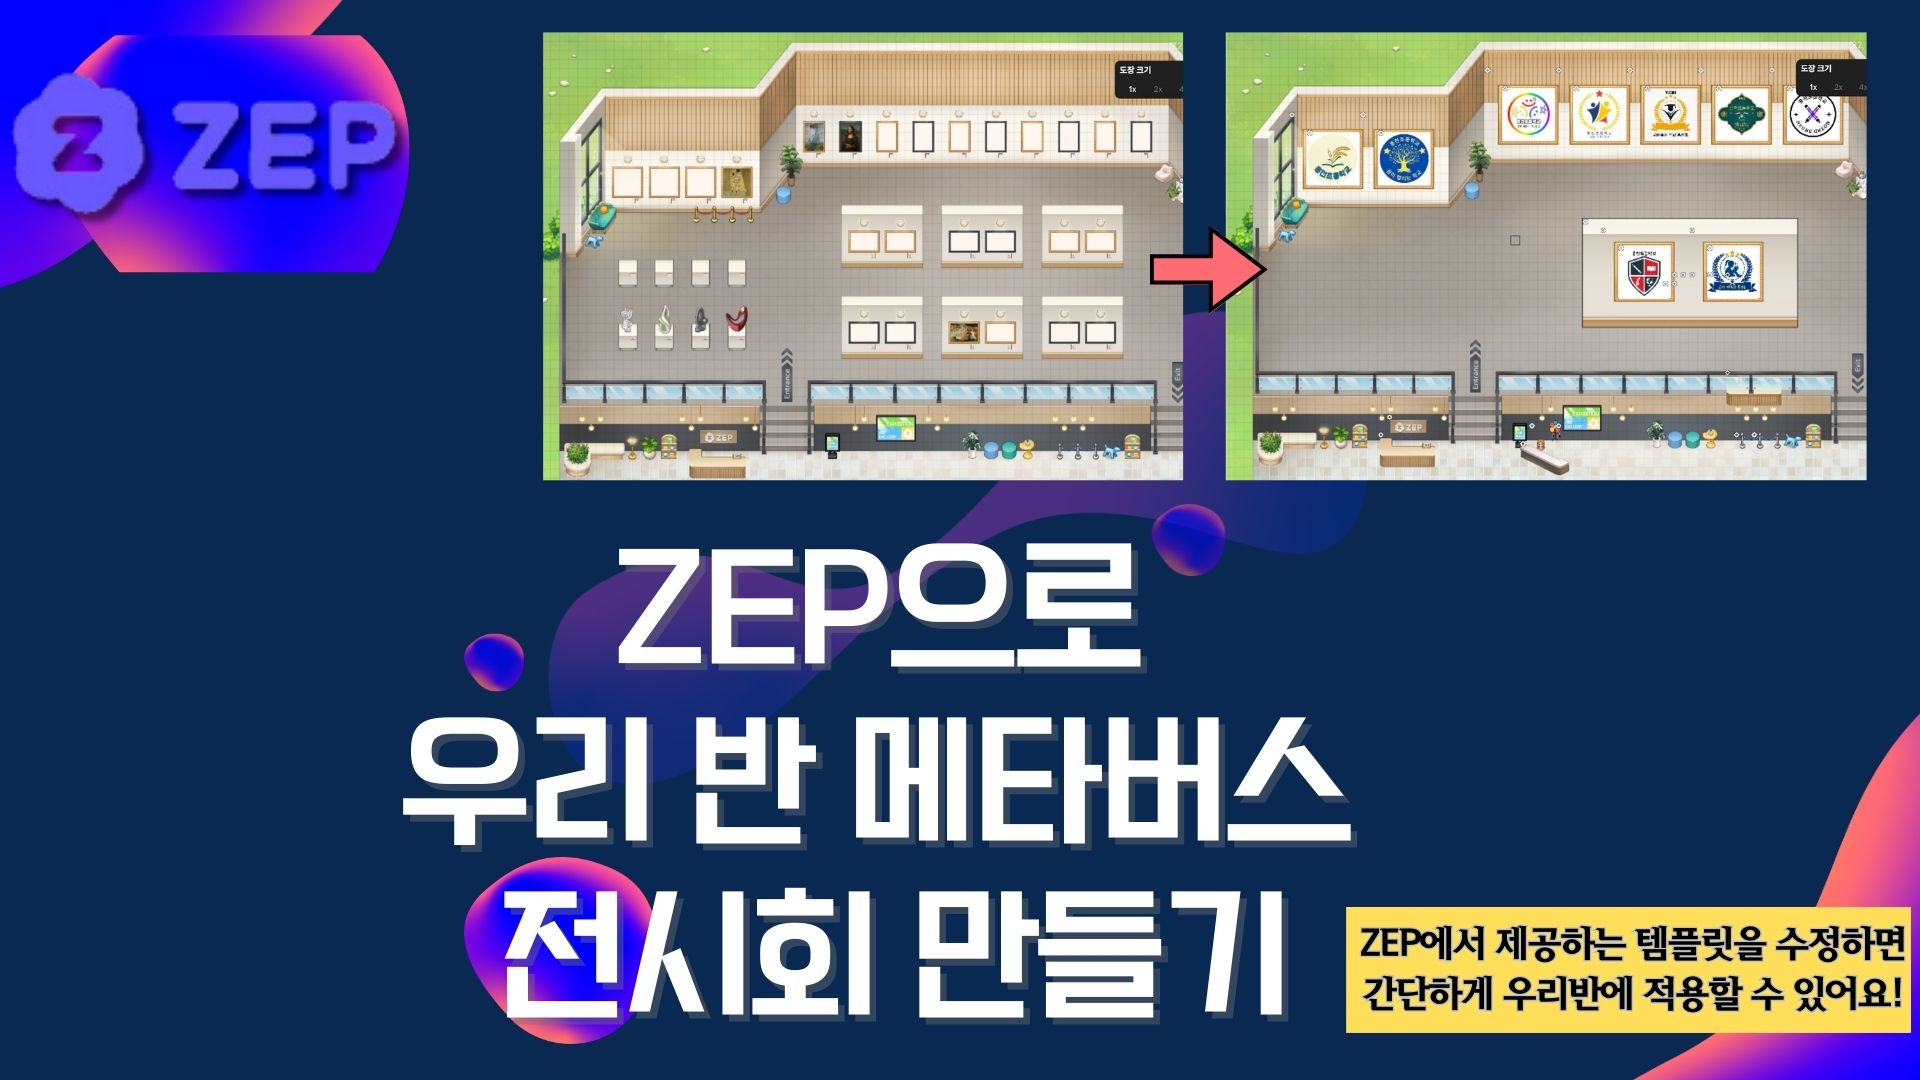 ZEP으로 우리반 메타버스 전시회 만들기 (기본) -1기